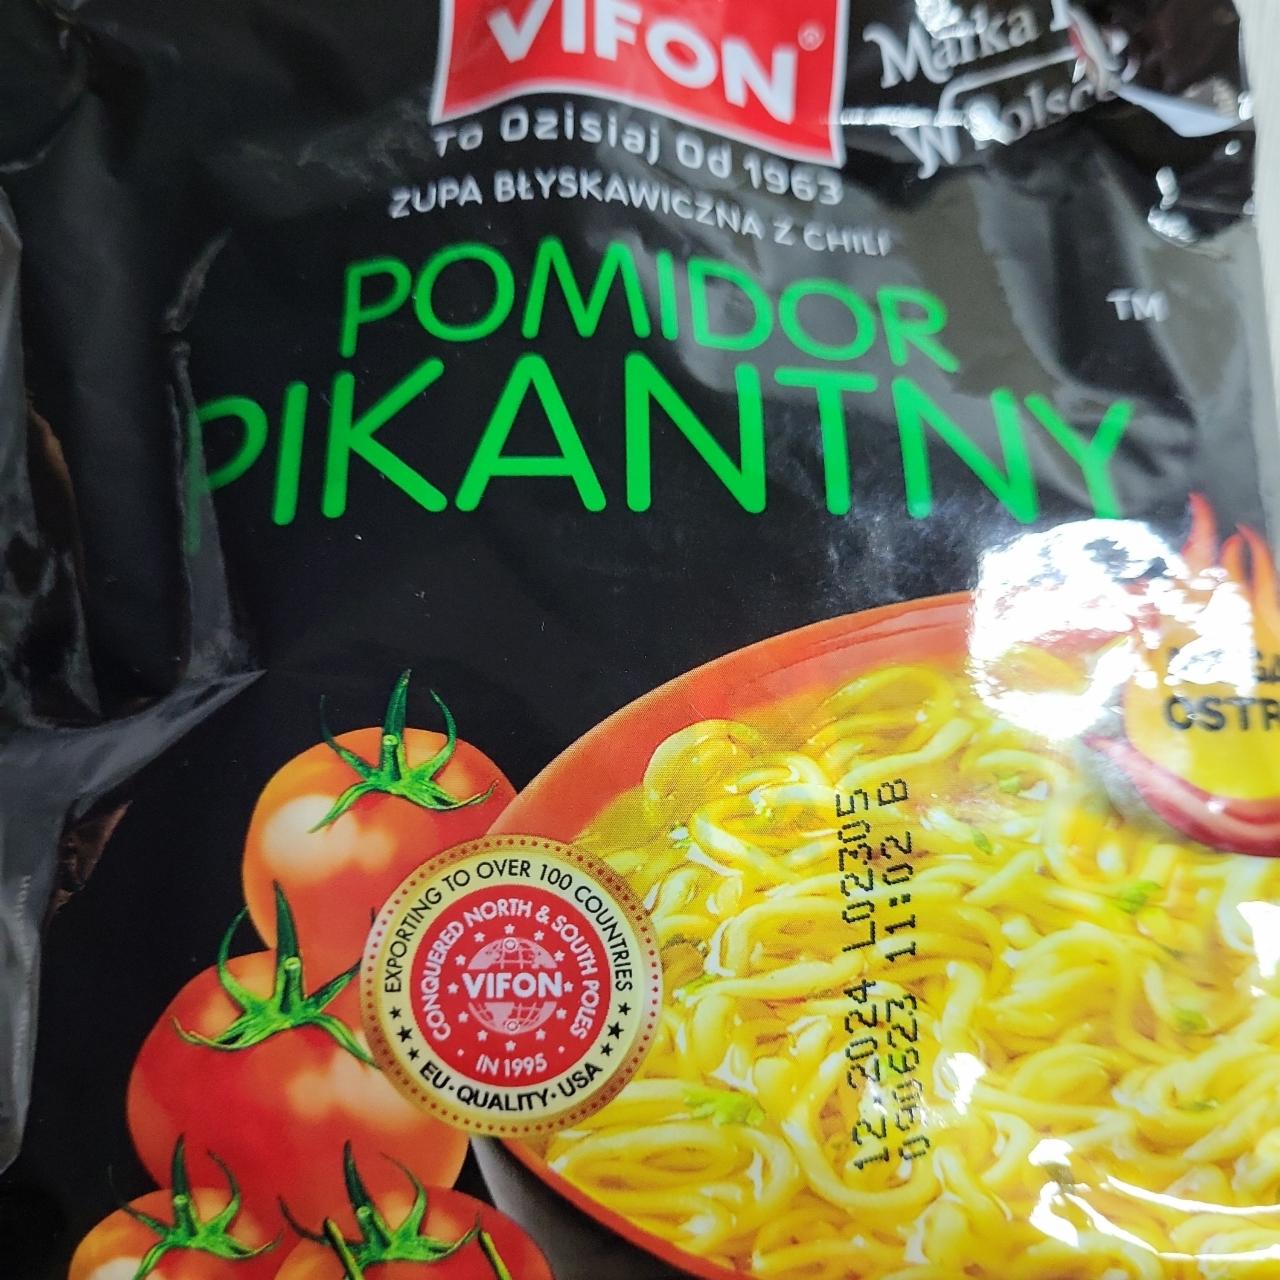 Фото - Вермишель быстрого приготовления Pomidor Pikantny Vifon